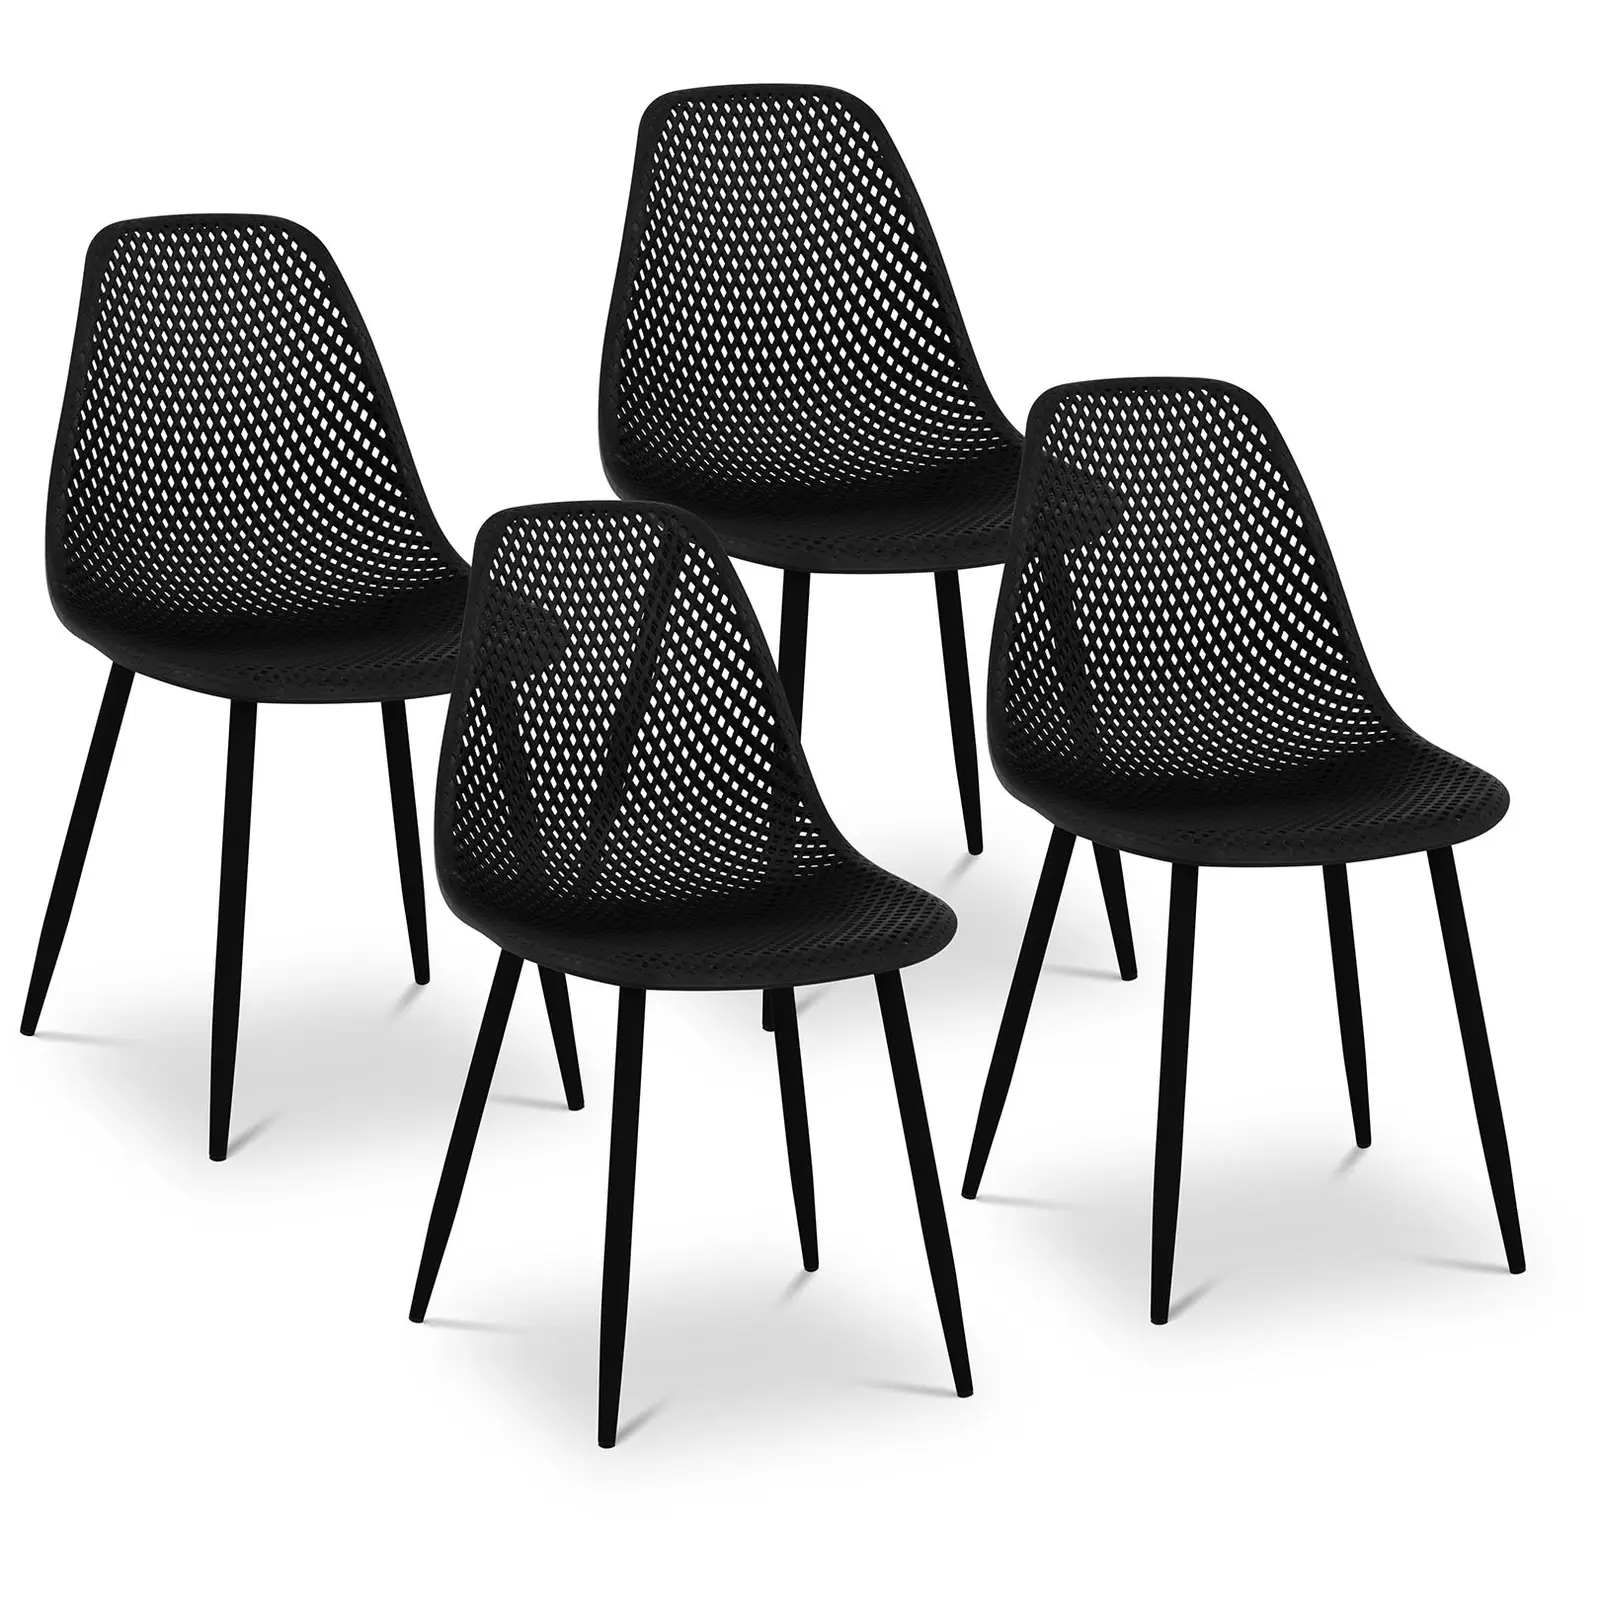 Chaise - Lot de 4 - 150 kg max. - Surface d'assise de 52 x 46,5 cm - Coloris noir - 1